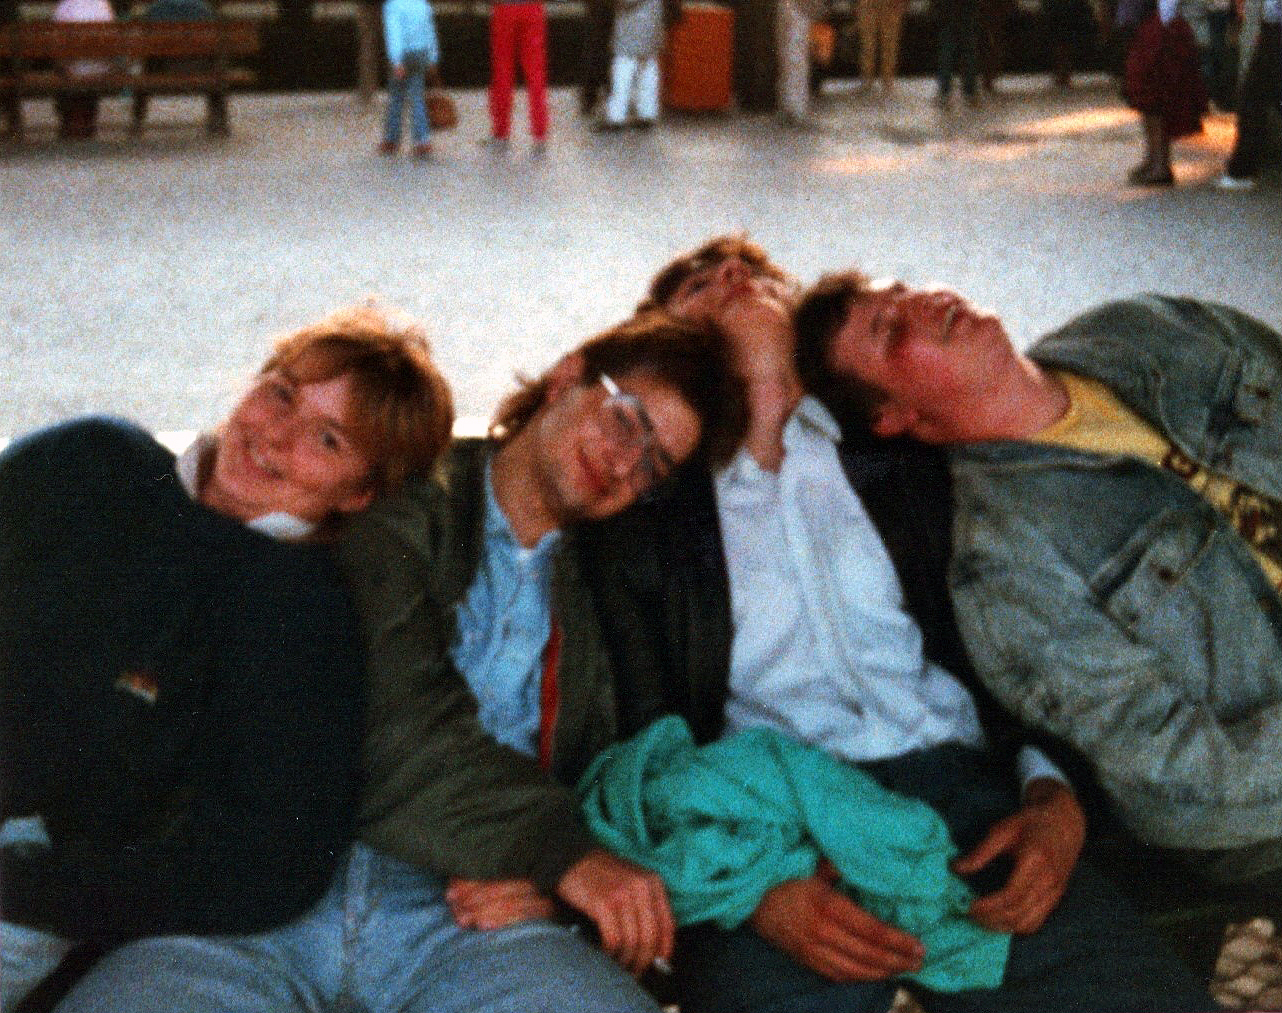 Zugreise nach Ost-Berlin - 1988 - Tagestour